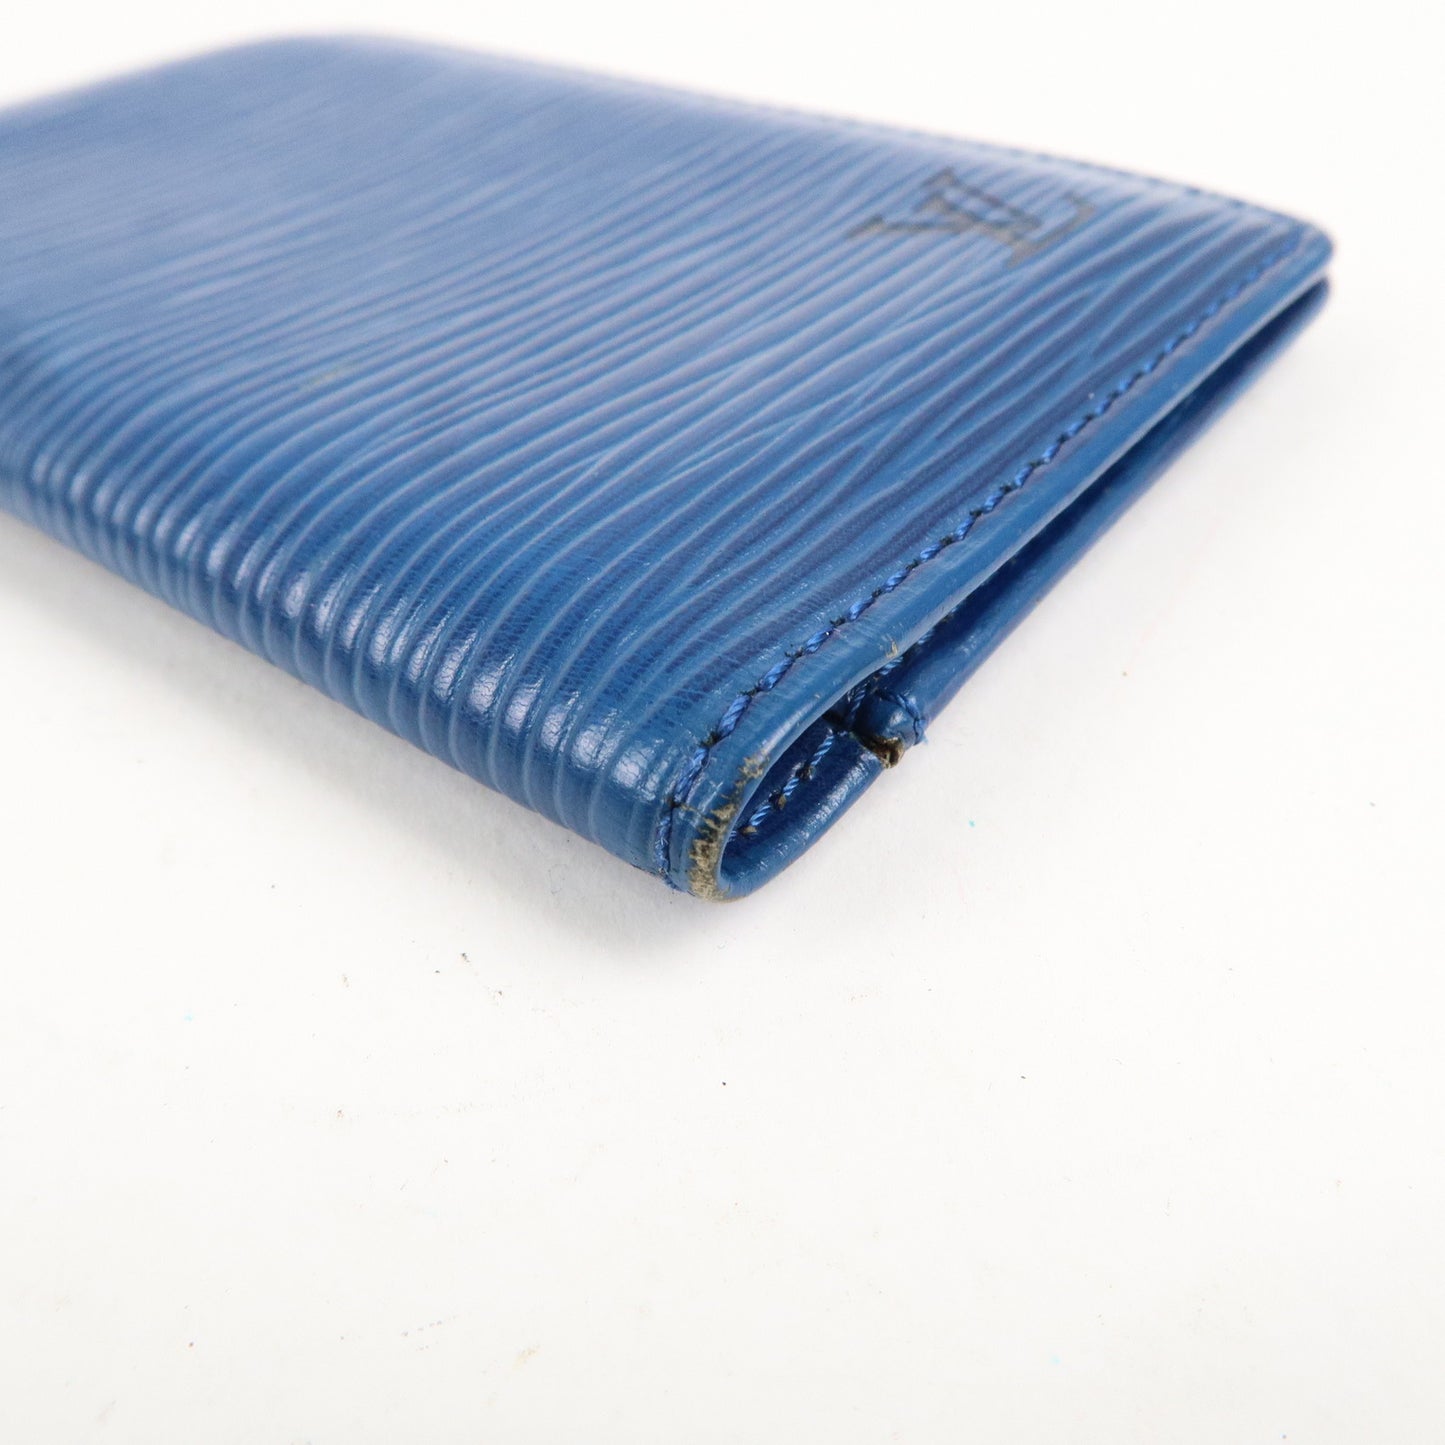 Louis Vuitton Set of 2 Epi Leather Card Case M63204 M56575